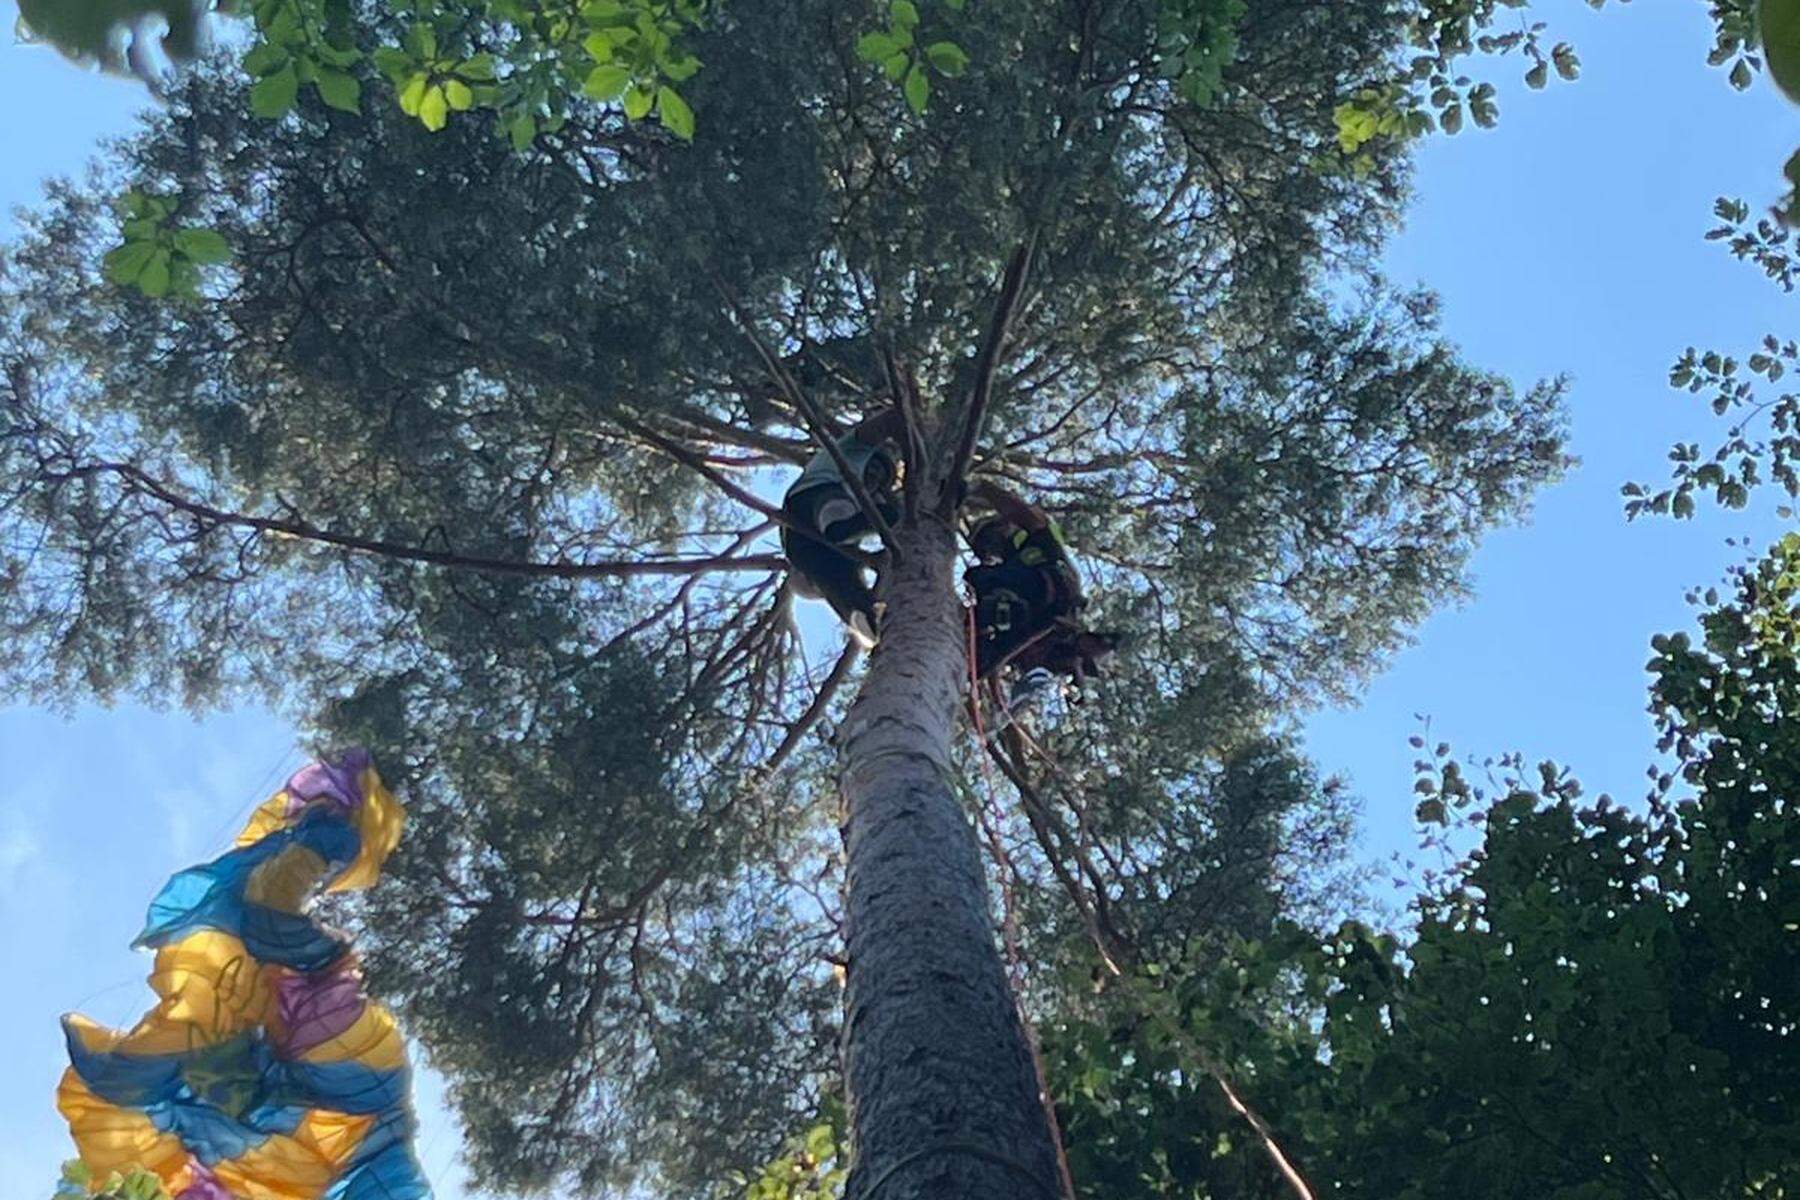 Unfall in Kärnten: Paragleiter stürzt ab und bleibt in 30 Meter Höhe in Baum hängen